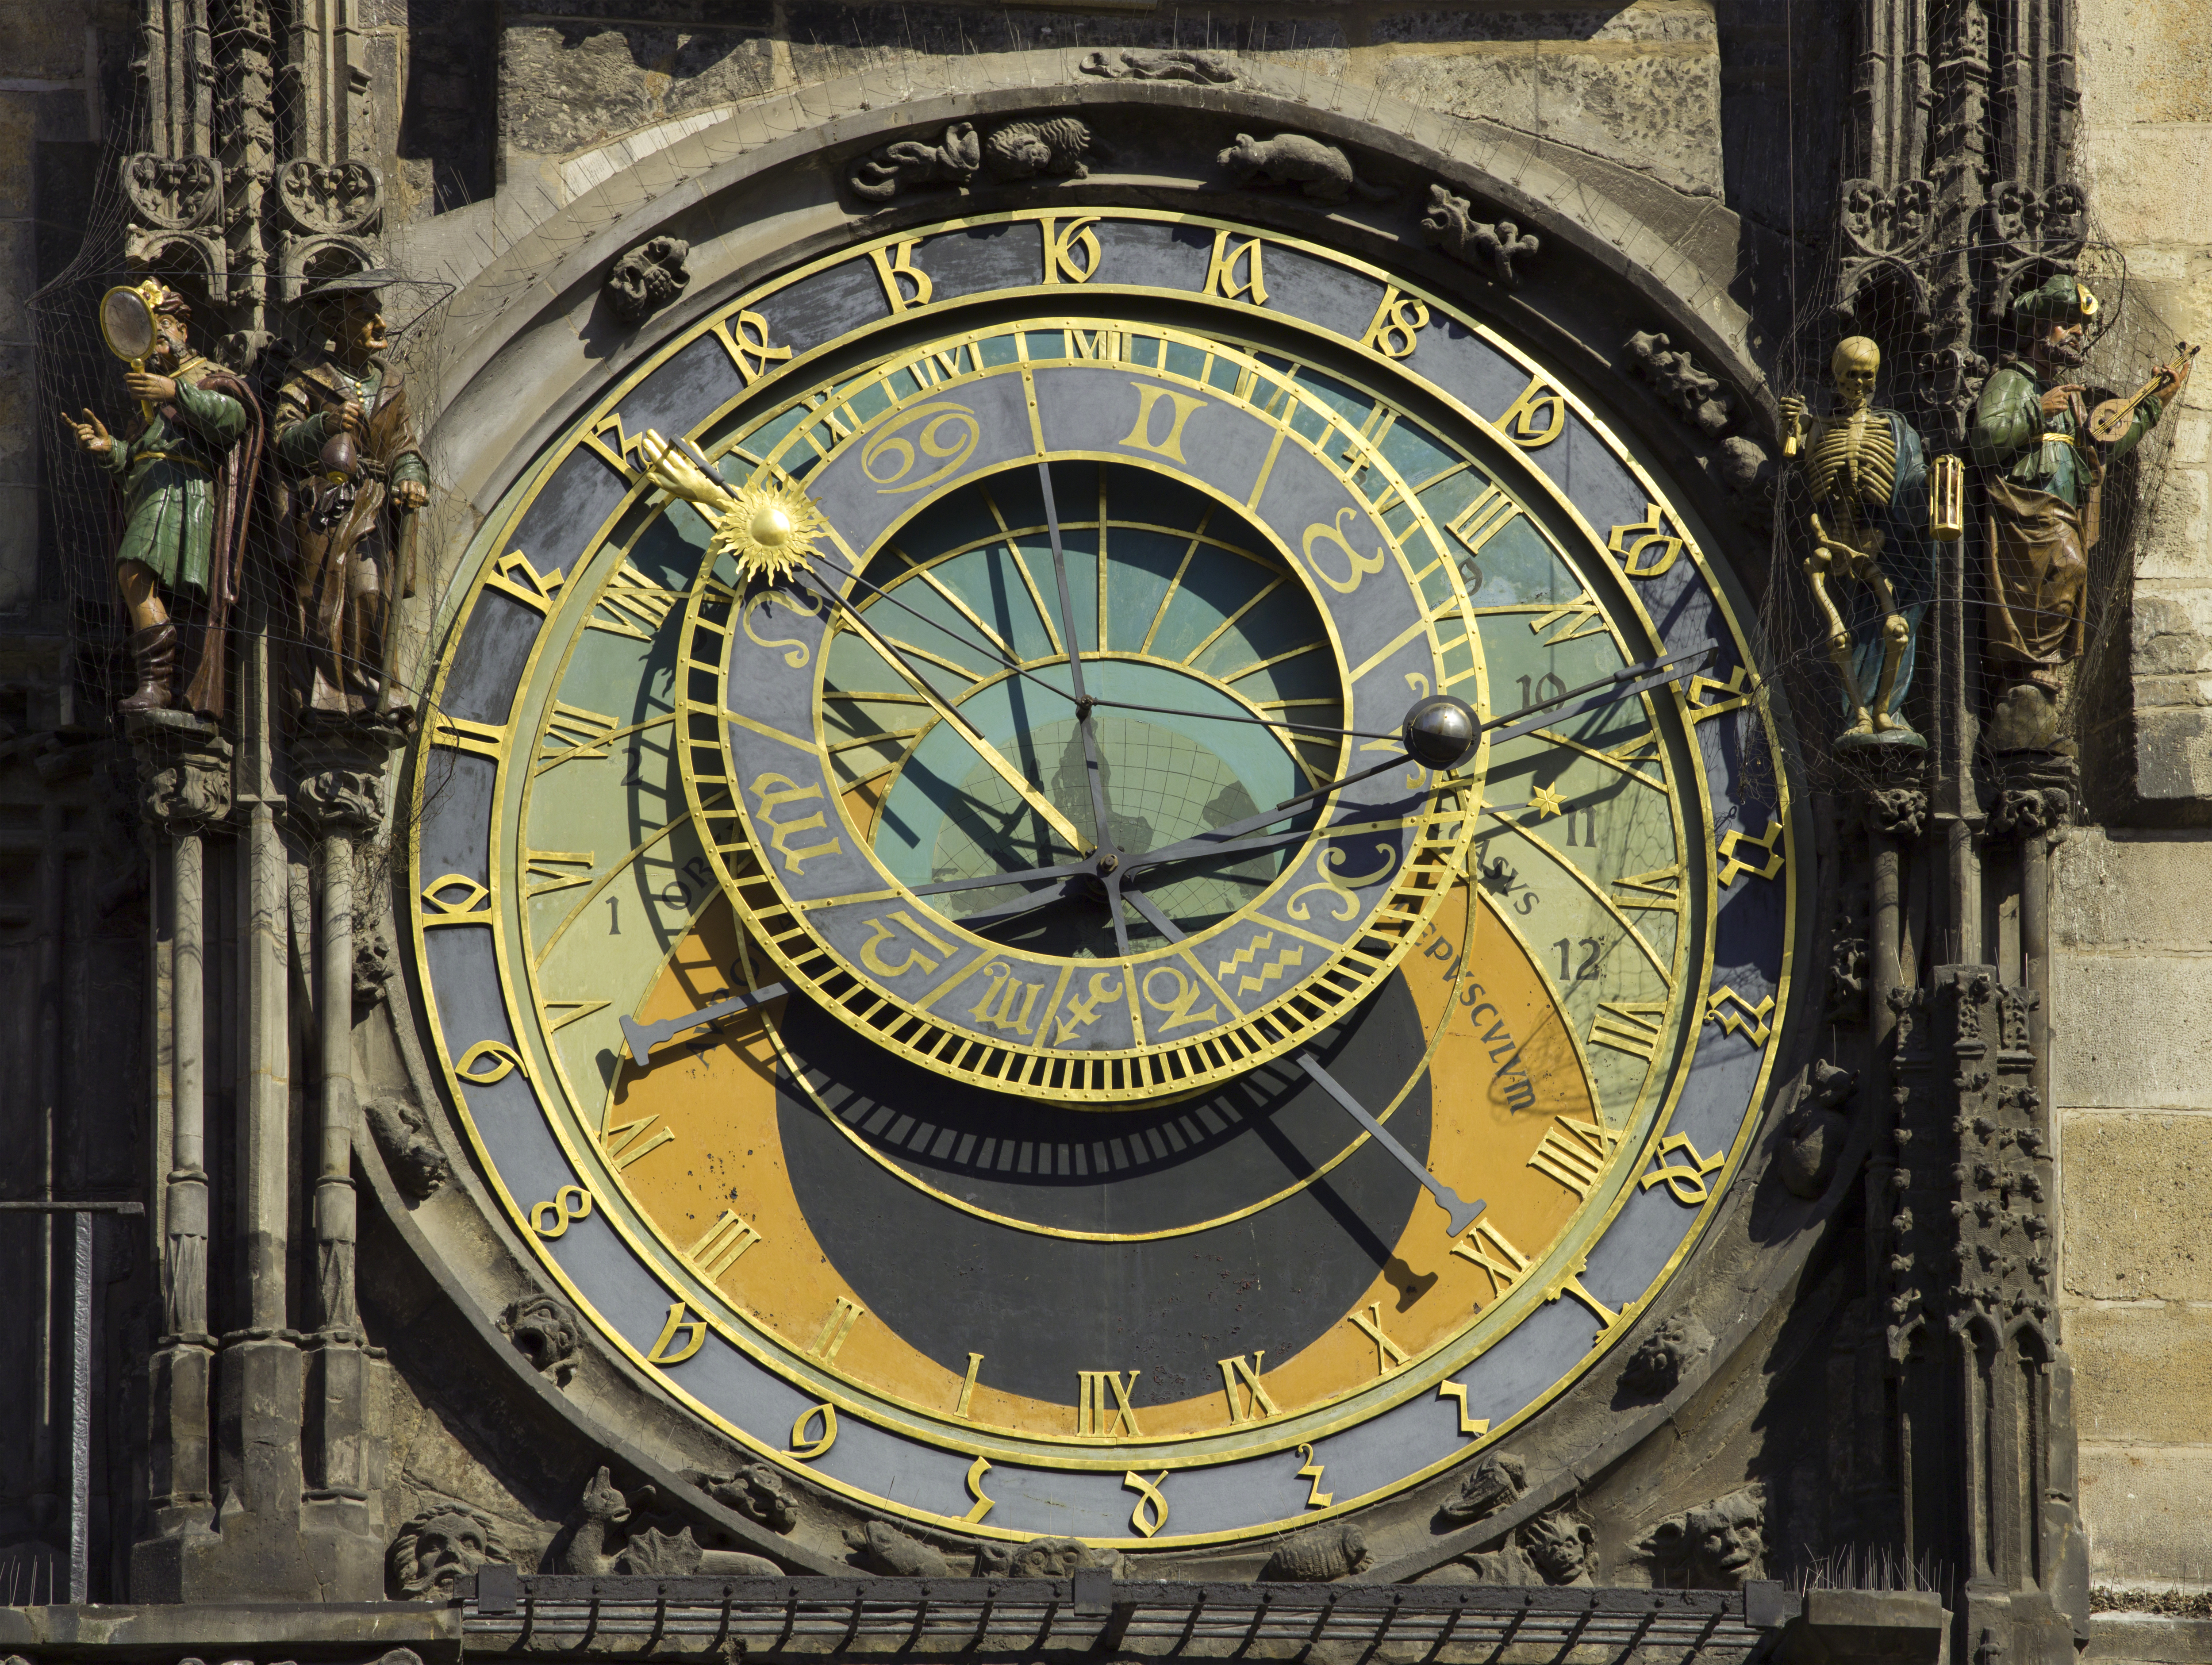 Czech-2013-Prague-Astronomical clock face